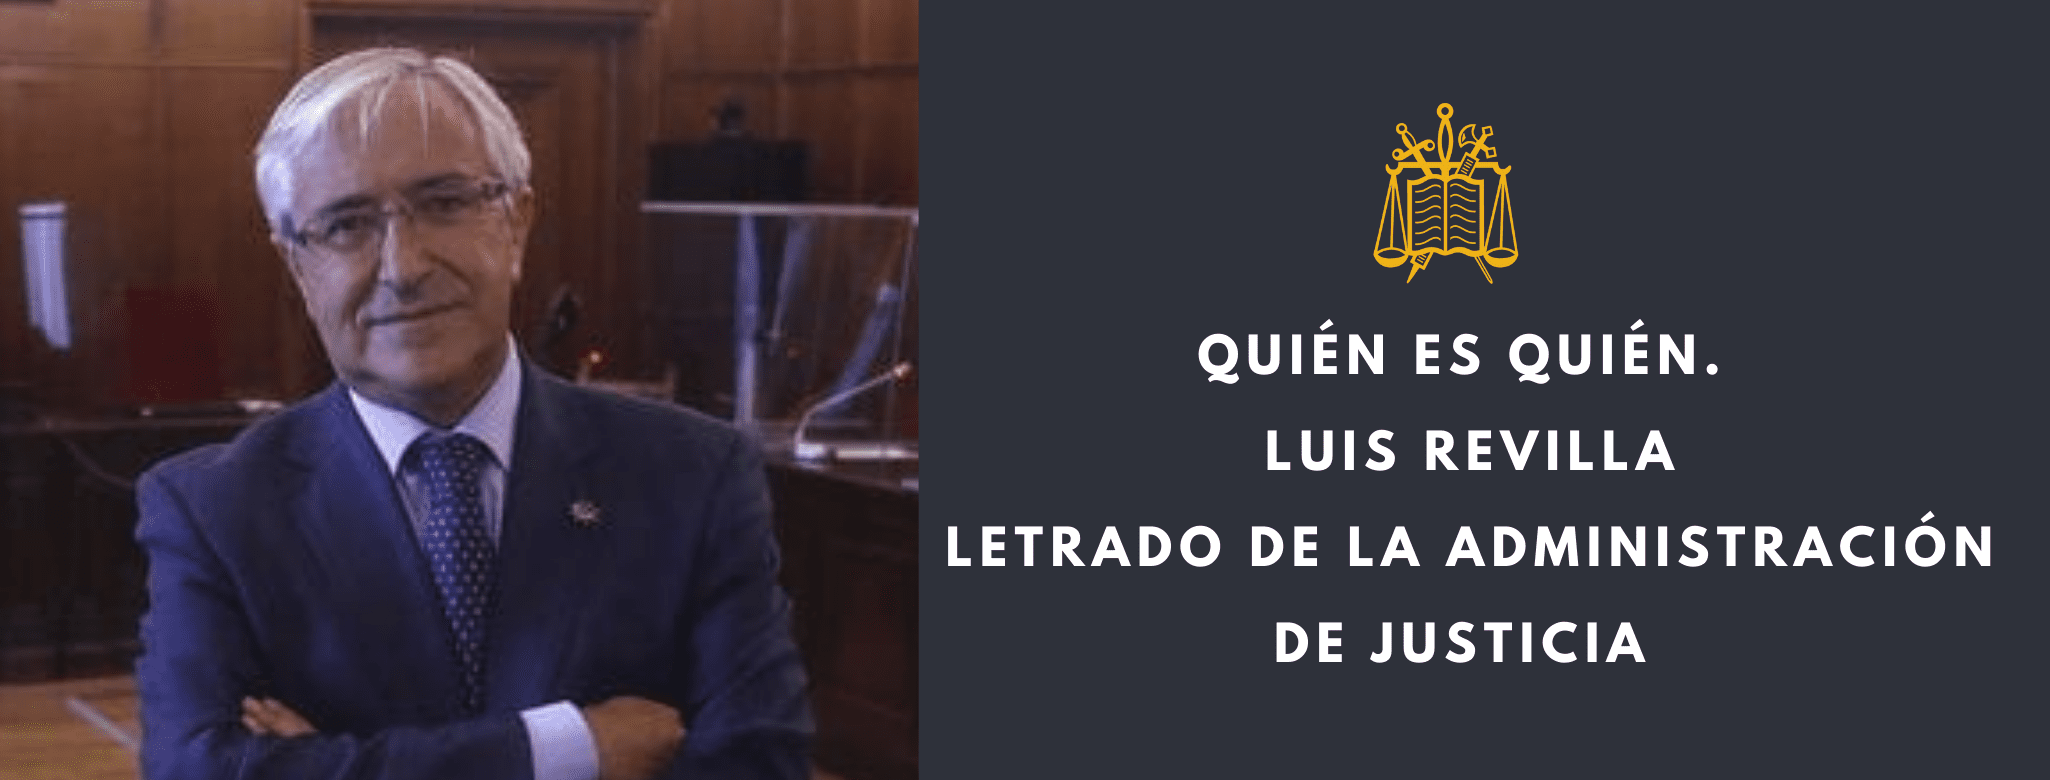 Luis Revilla Letrado de Justicia